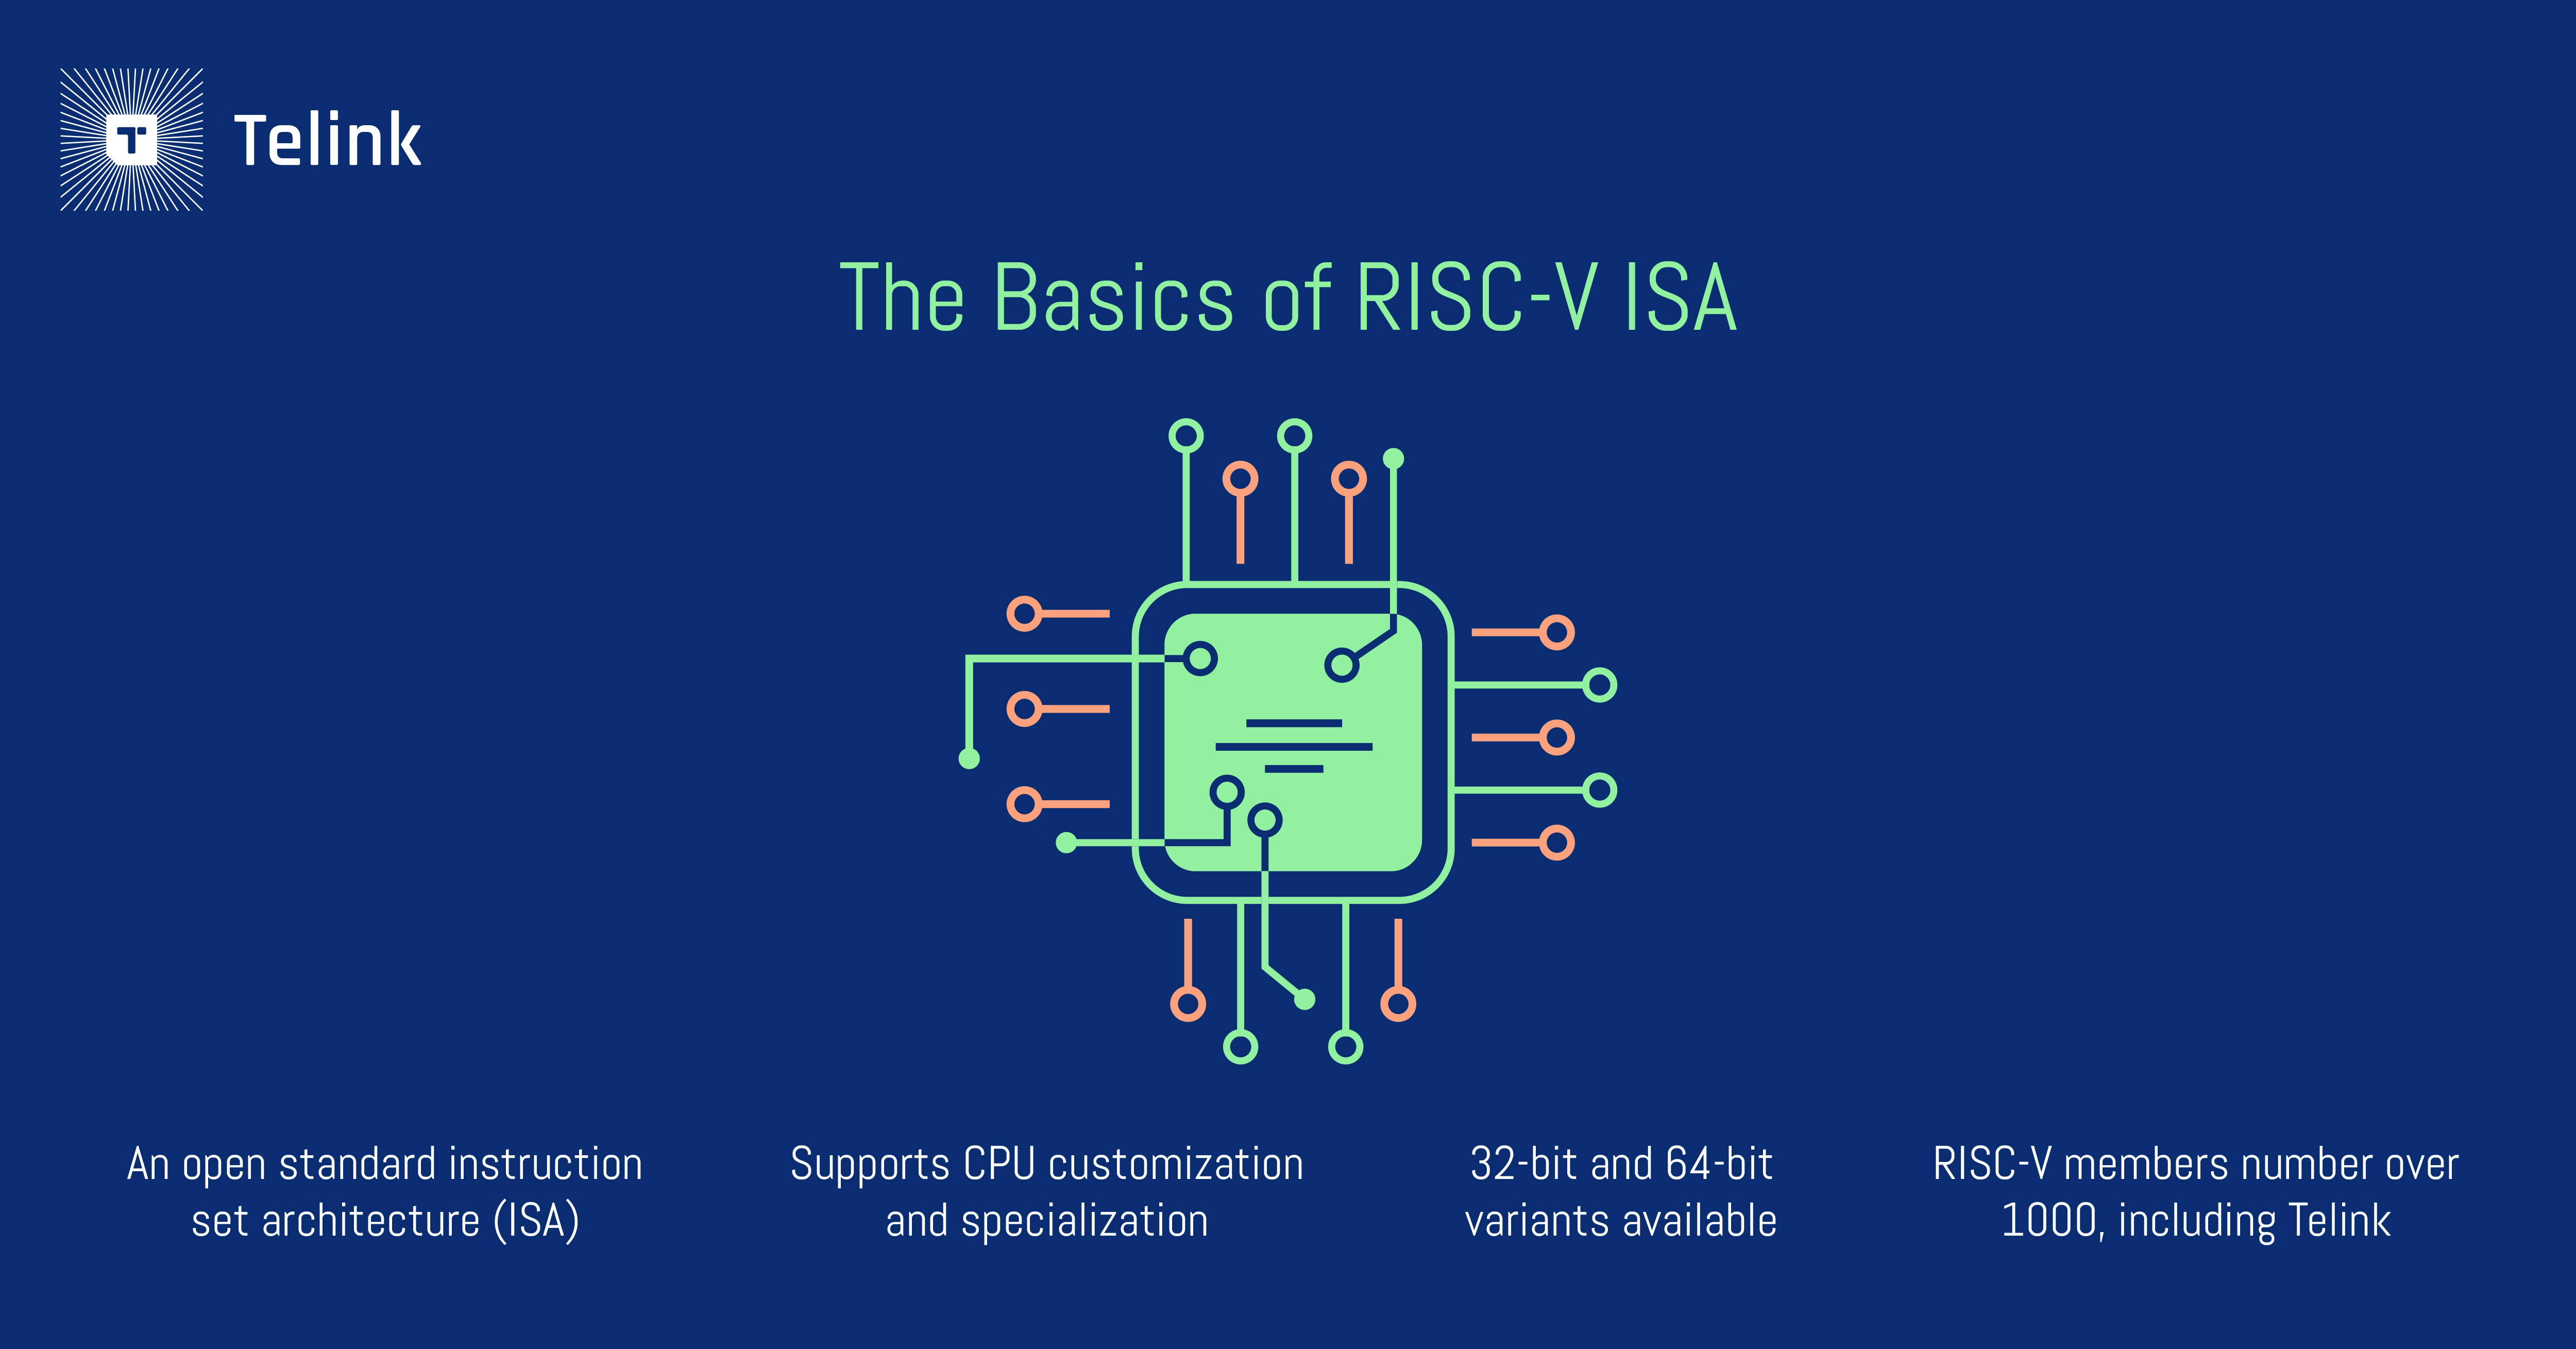 The basics of RISC-V ISA